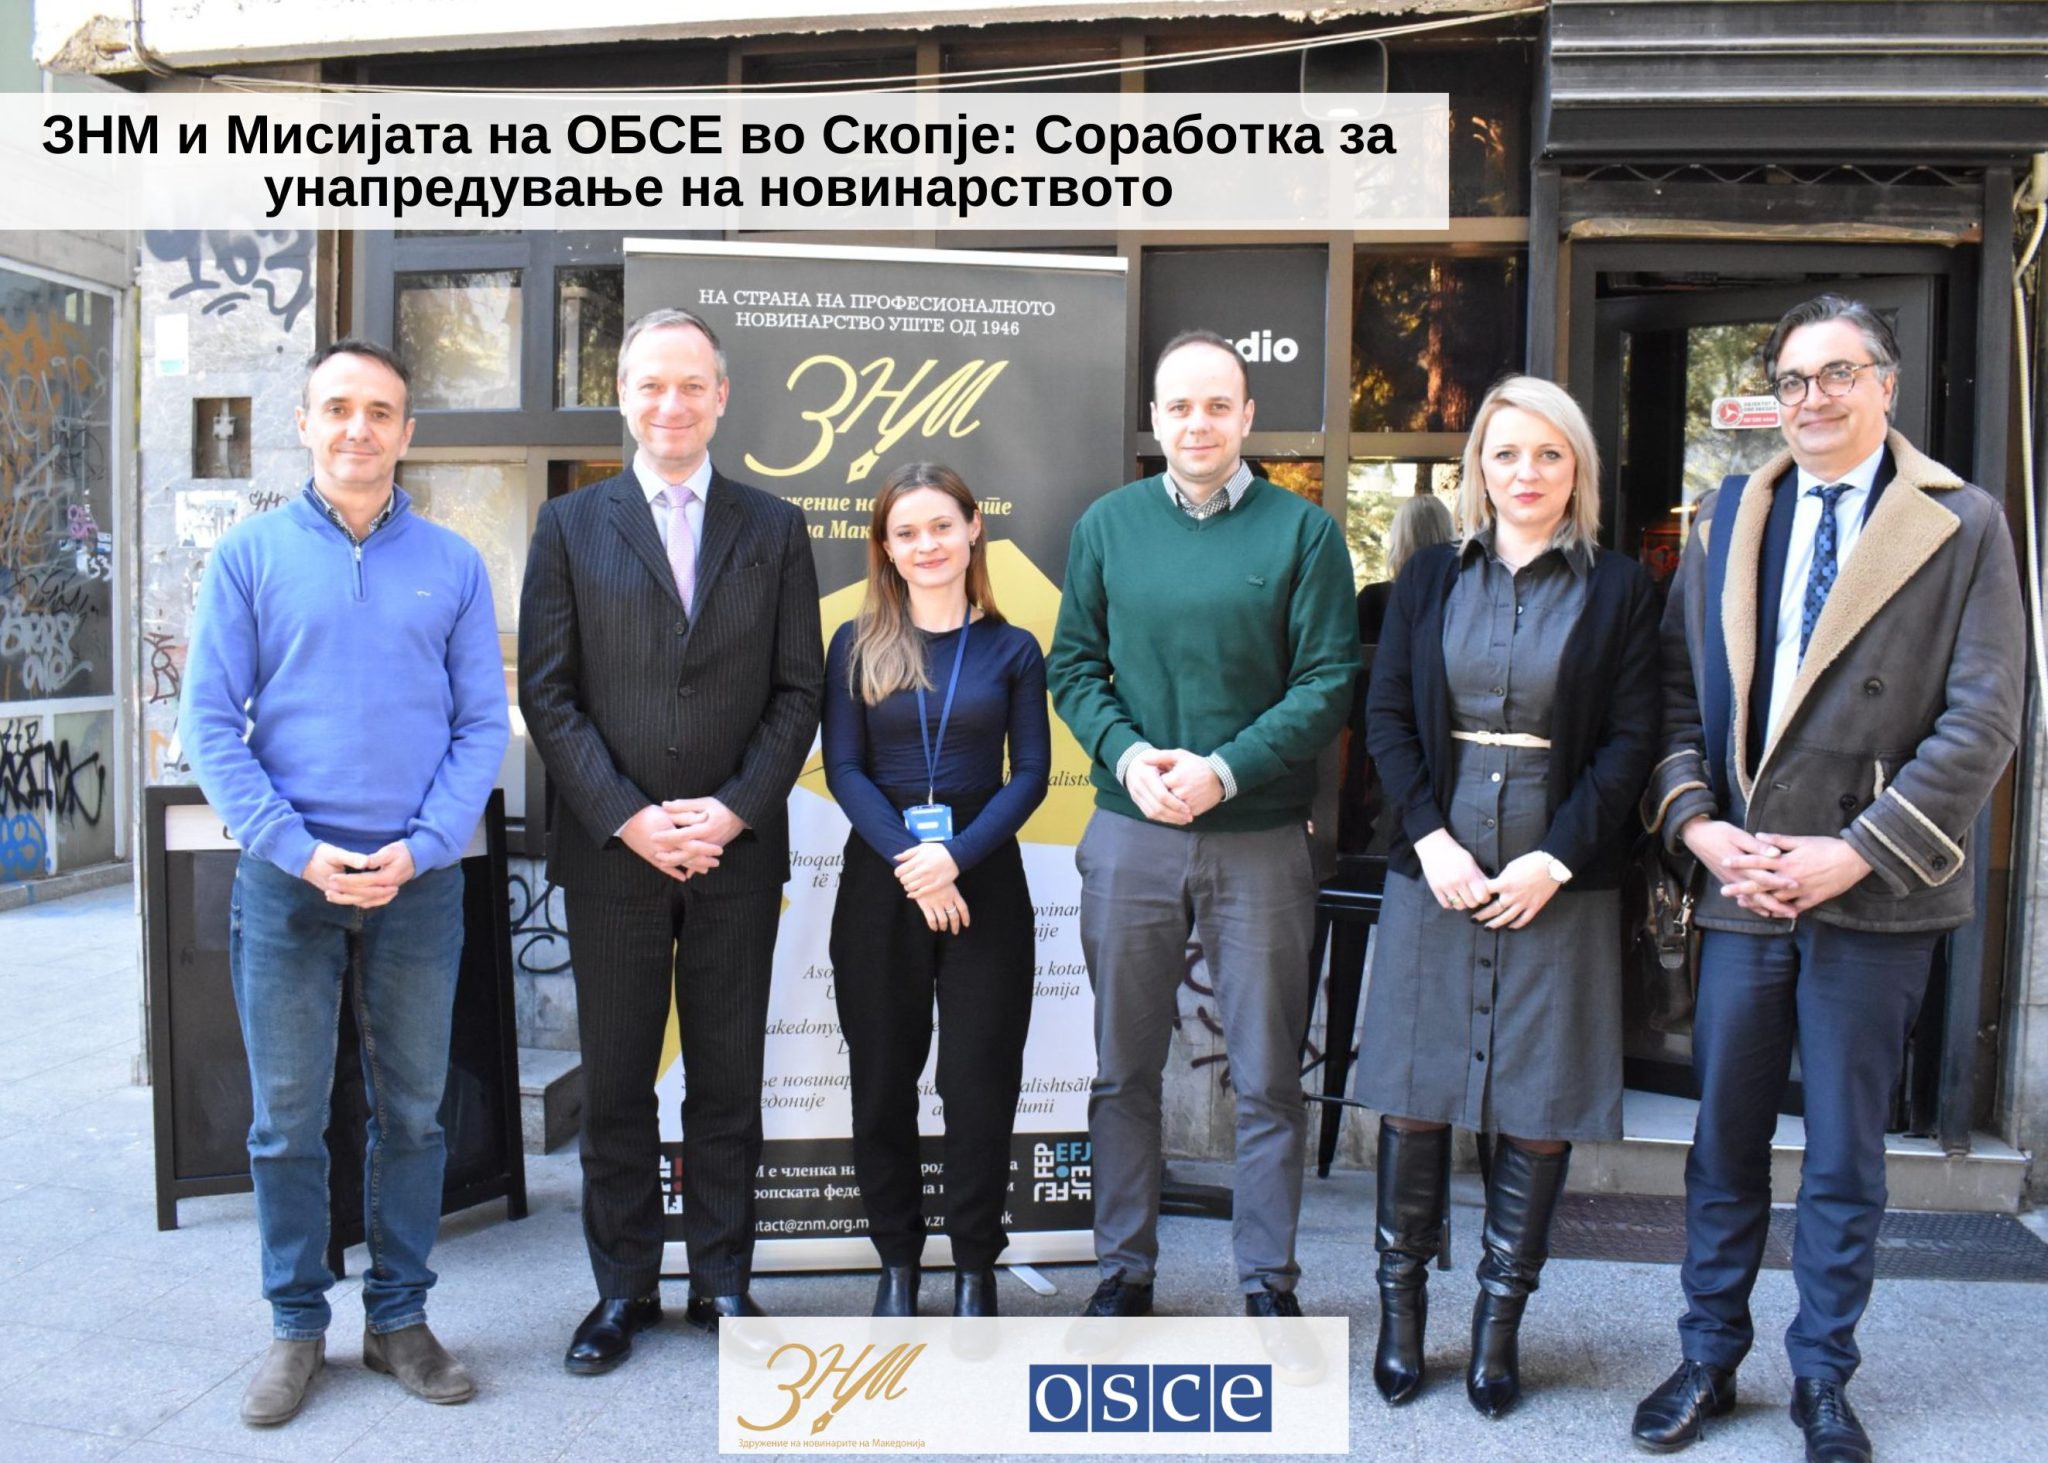 ЗНМ и Мисијата на ОБСЕ во Скопје: Соработка за унапредување на новинарството